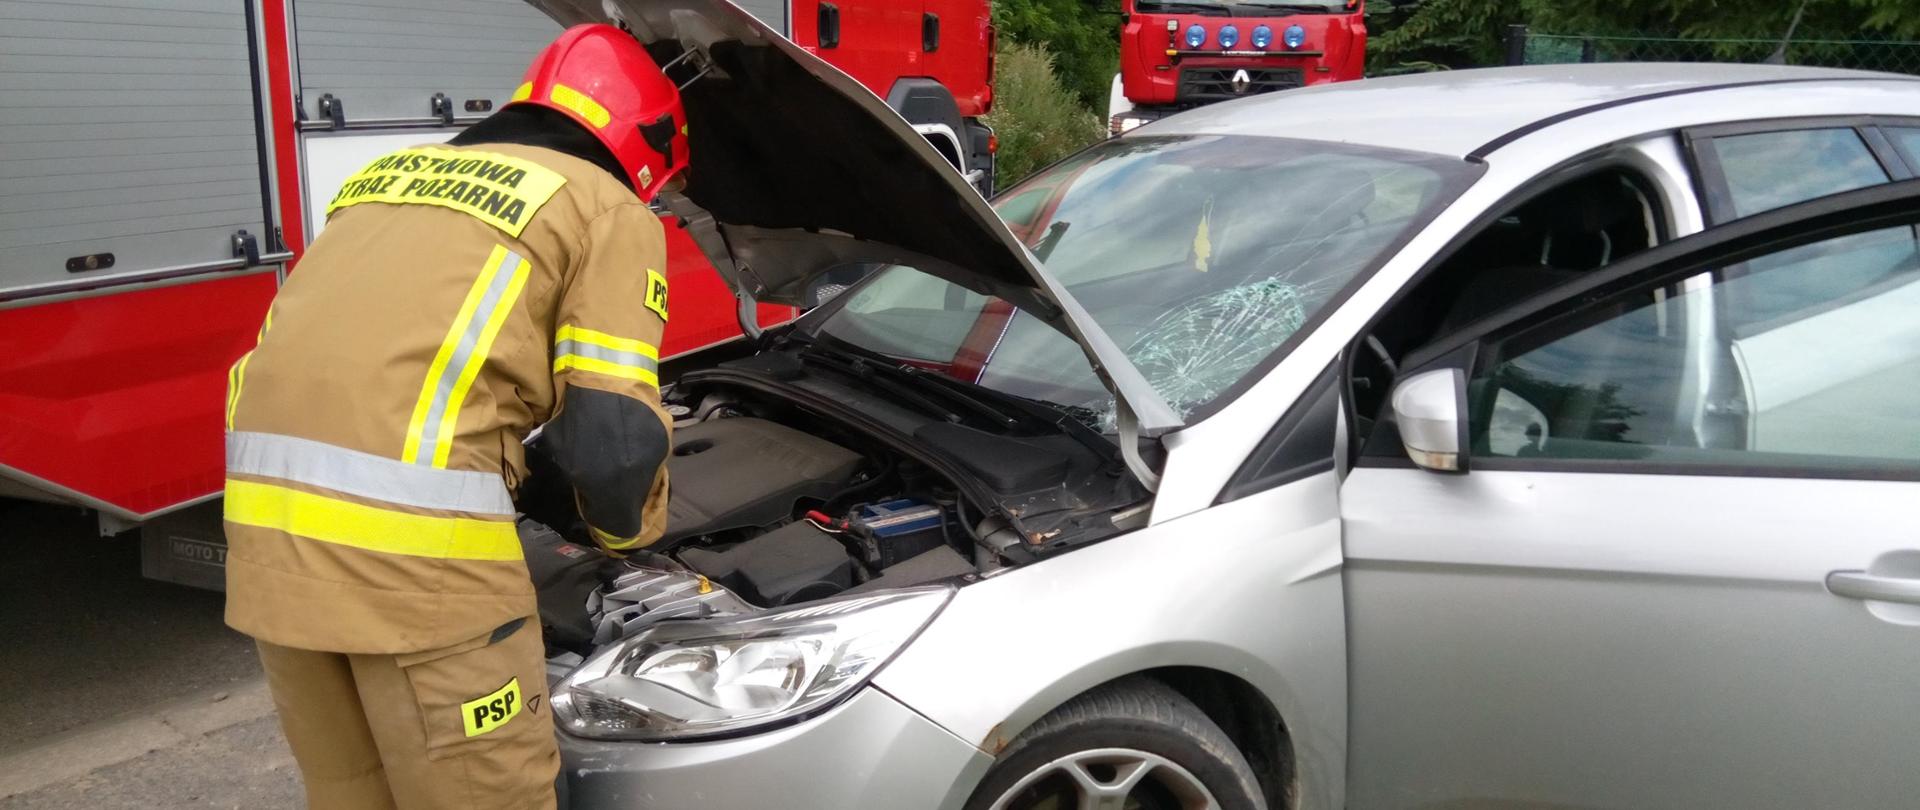 Umundurowany strażak odkręca akumulator w srebrnym samochodzie osobowym.